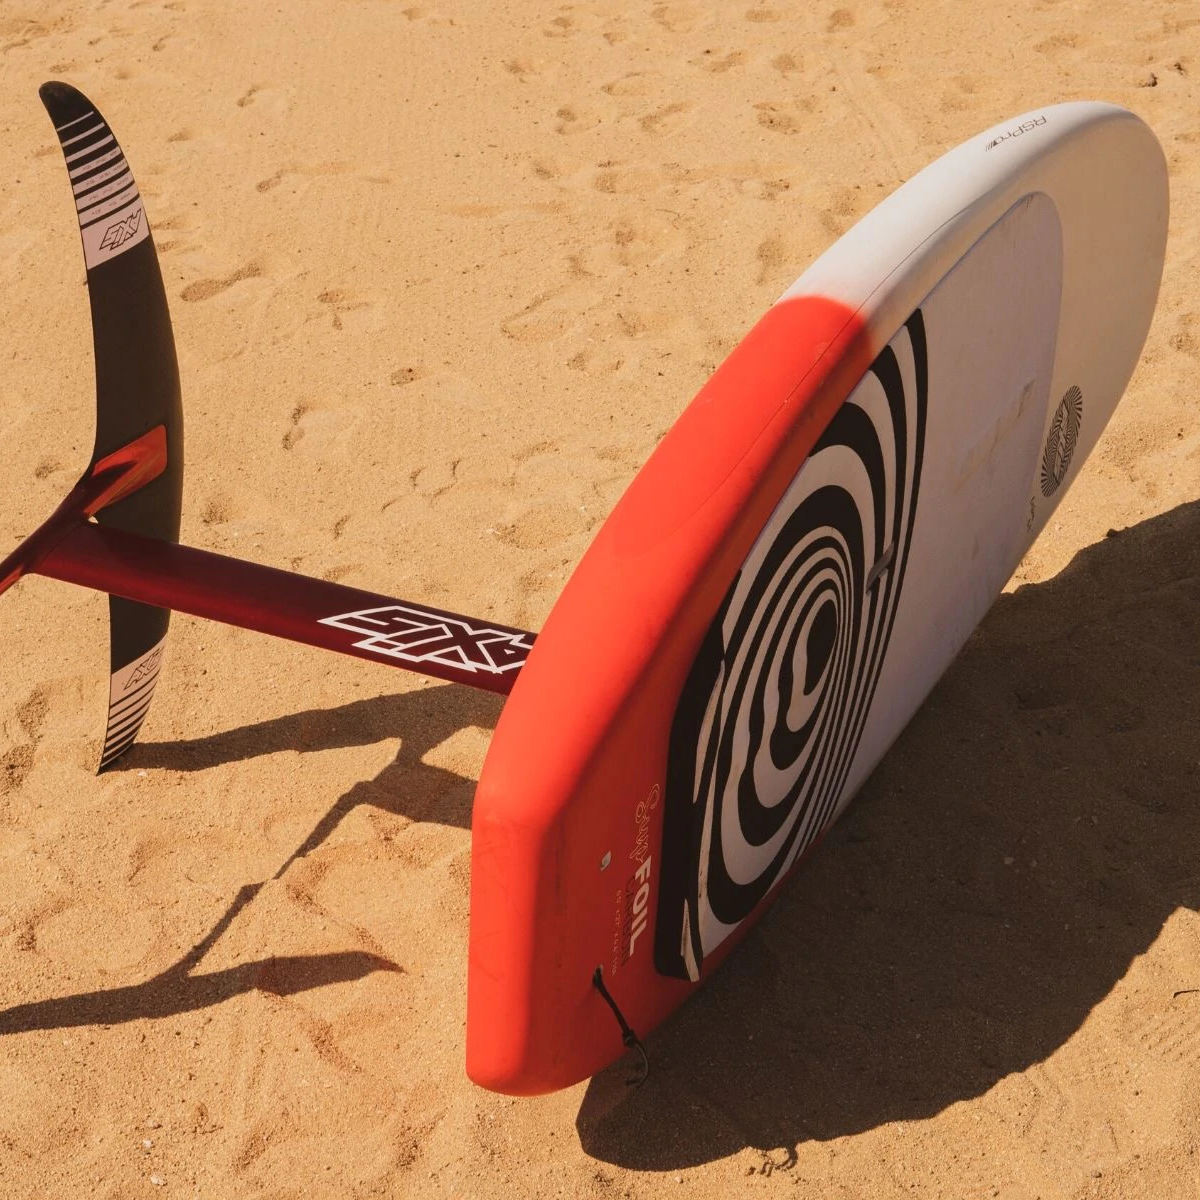 Montierter RSPro Rail Saver Surf auf dem Rail eines Foil Stand up Paddle Boards am Strand.